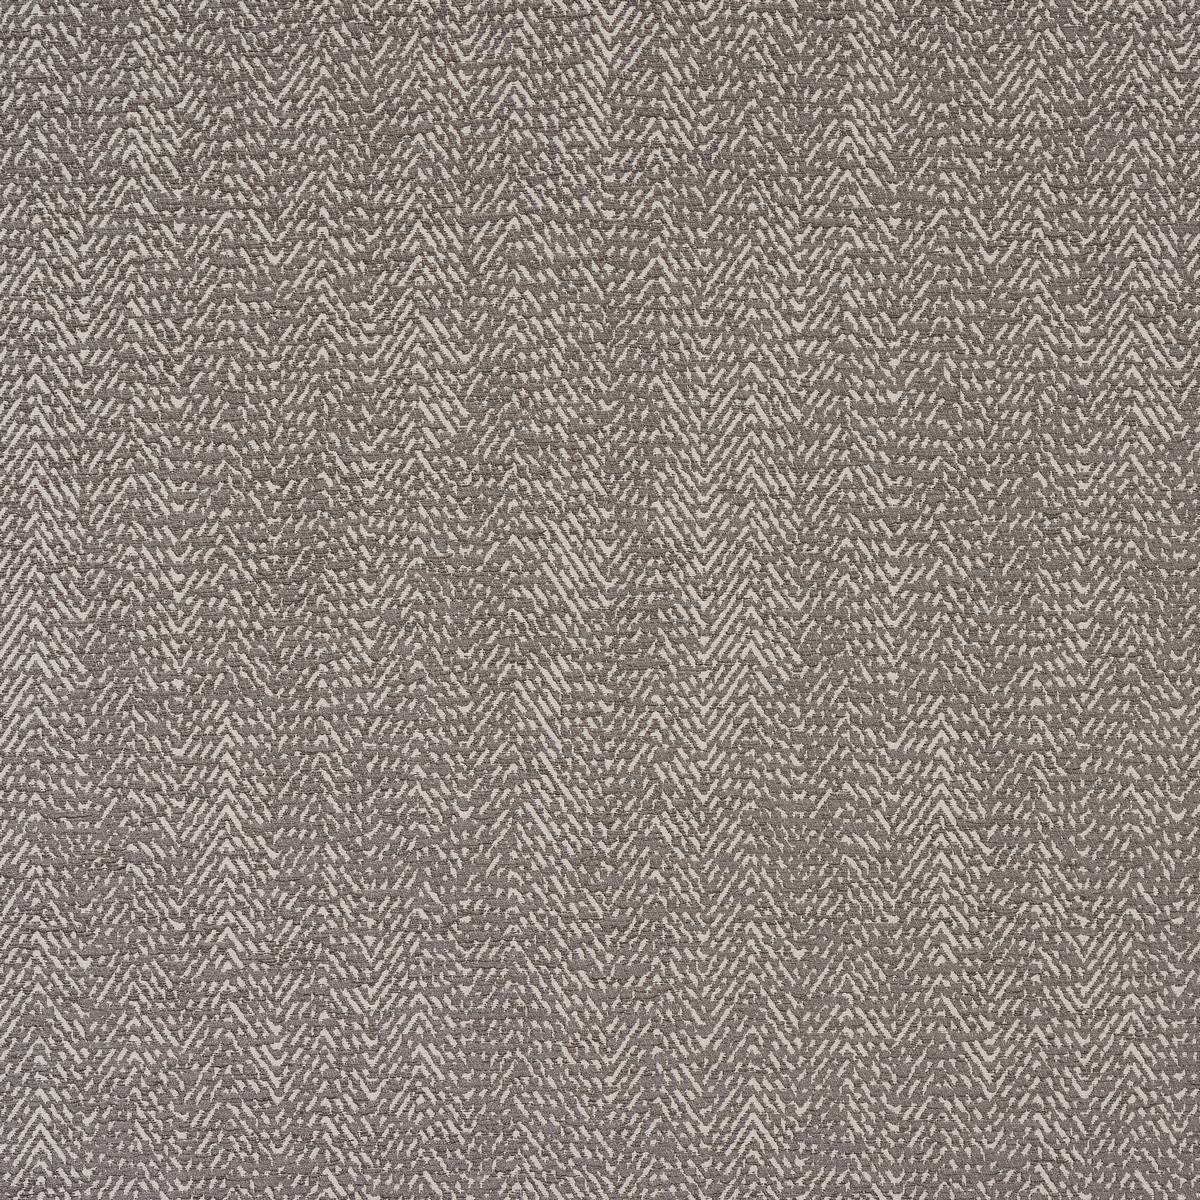 Shelley Soft Grey Fabric by Fryetts